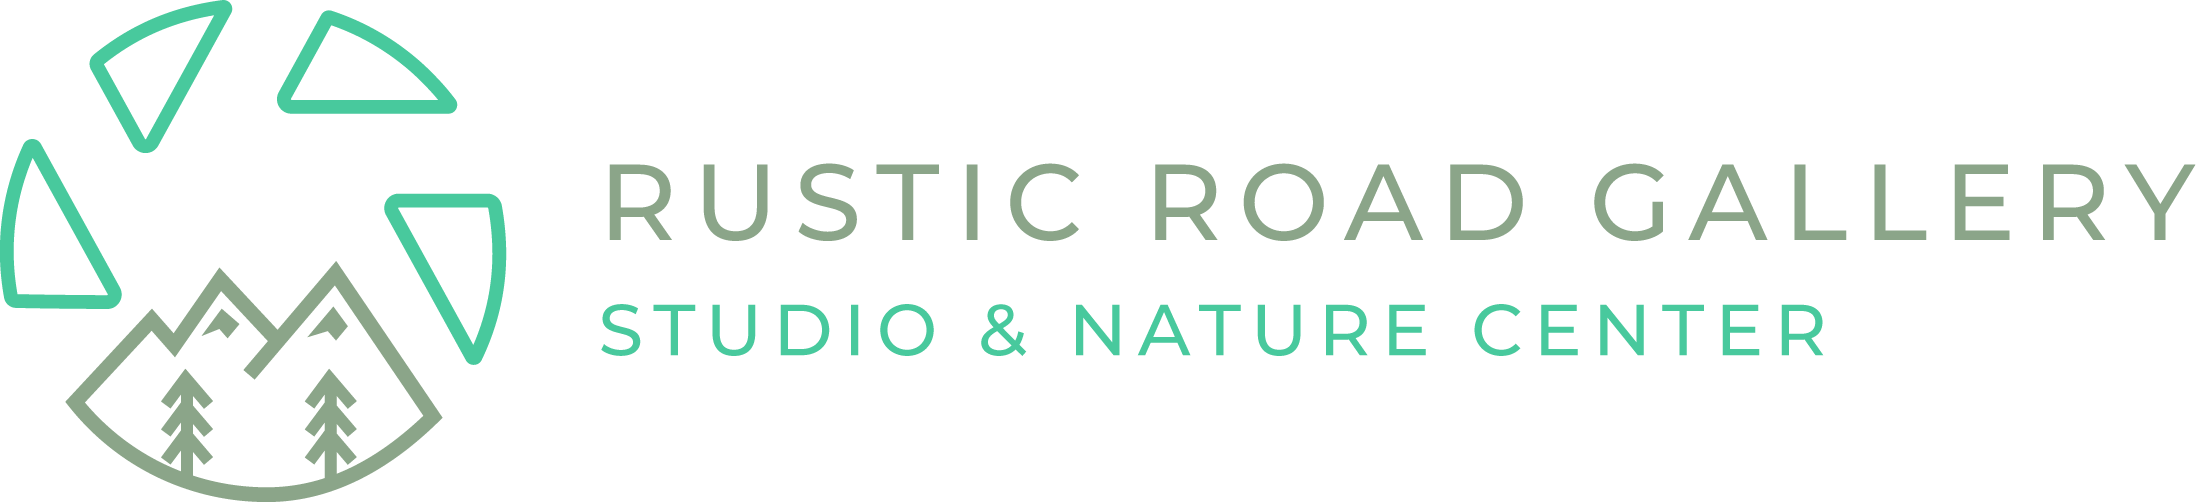 Rustic Road Gallery - Studio & Nature Center